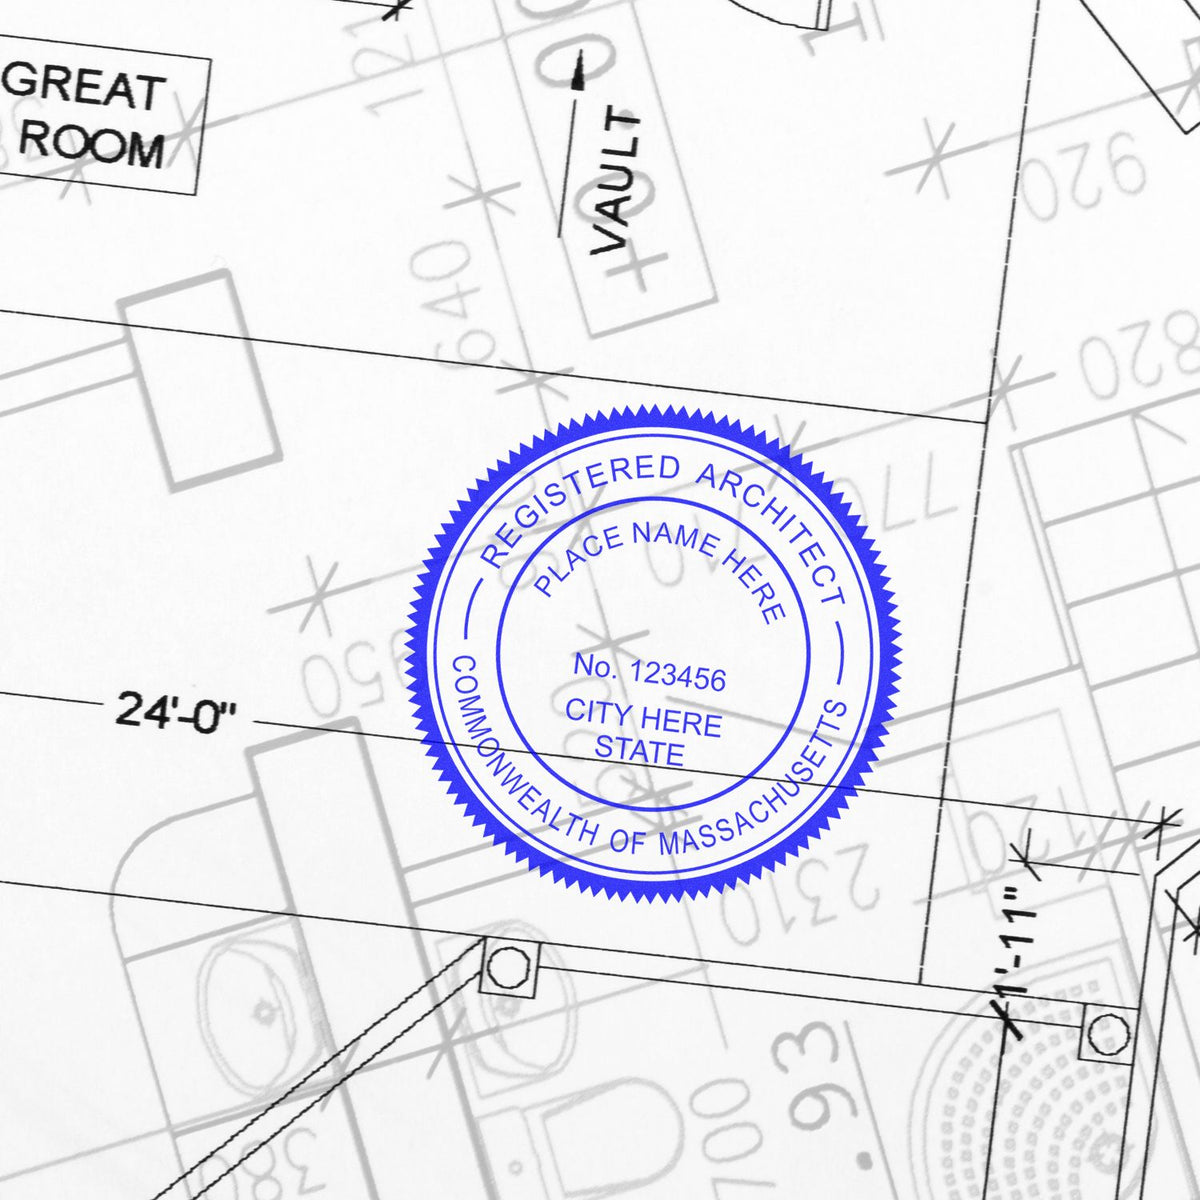 Digital Massachusetts Architect Stamp, Electronic Seal for Massachusetts Architect Size Overlay